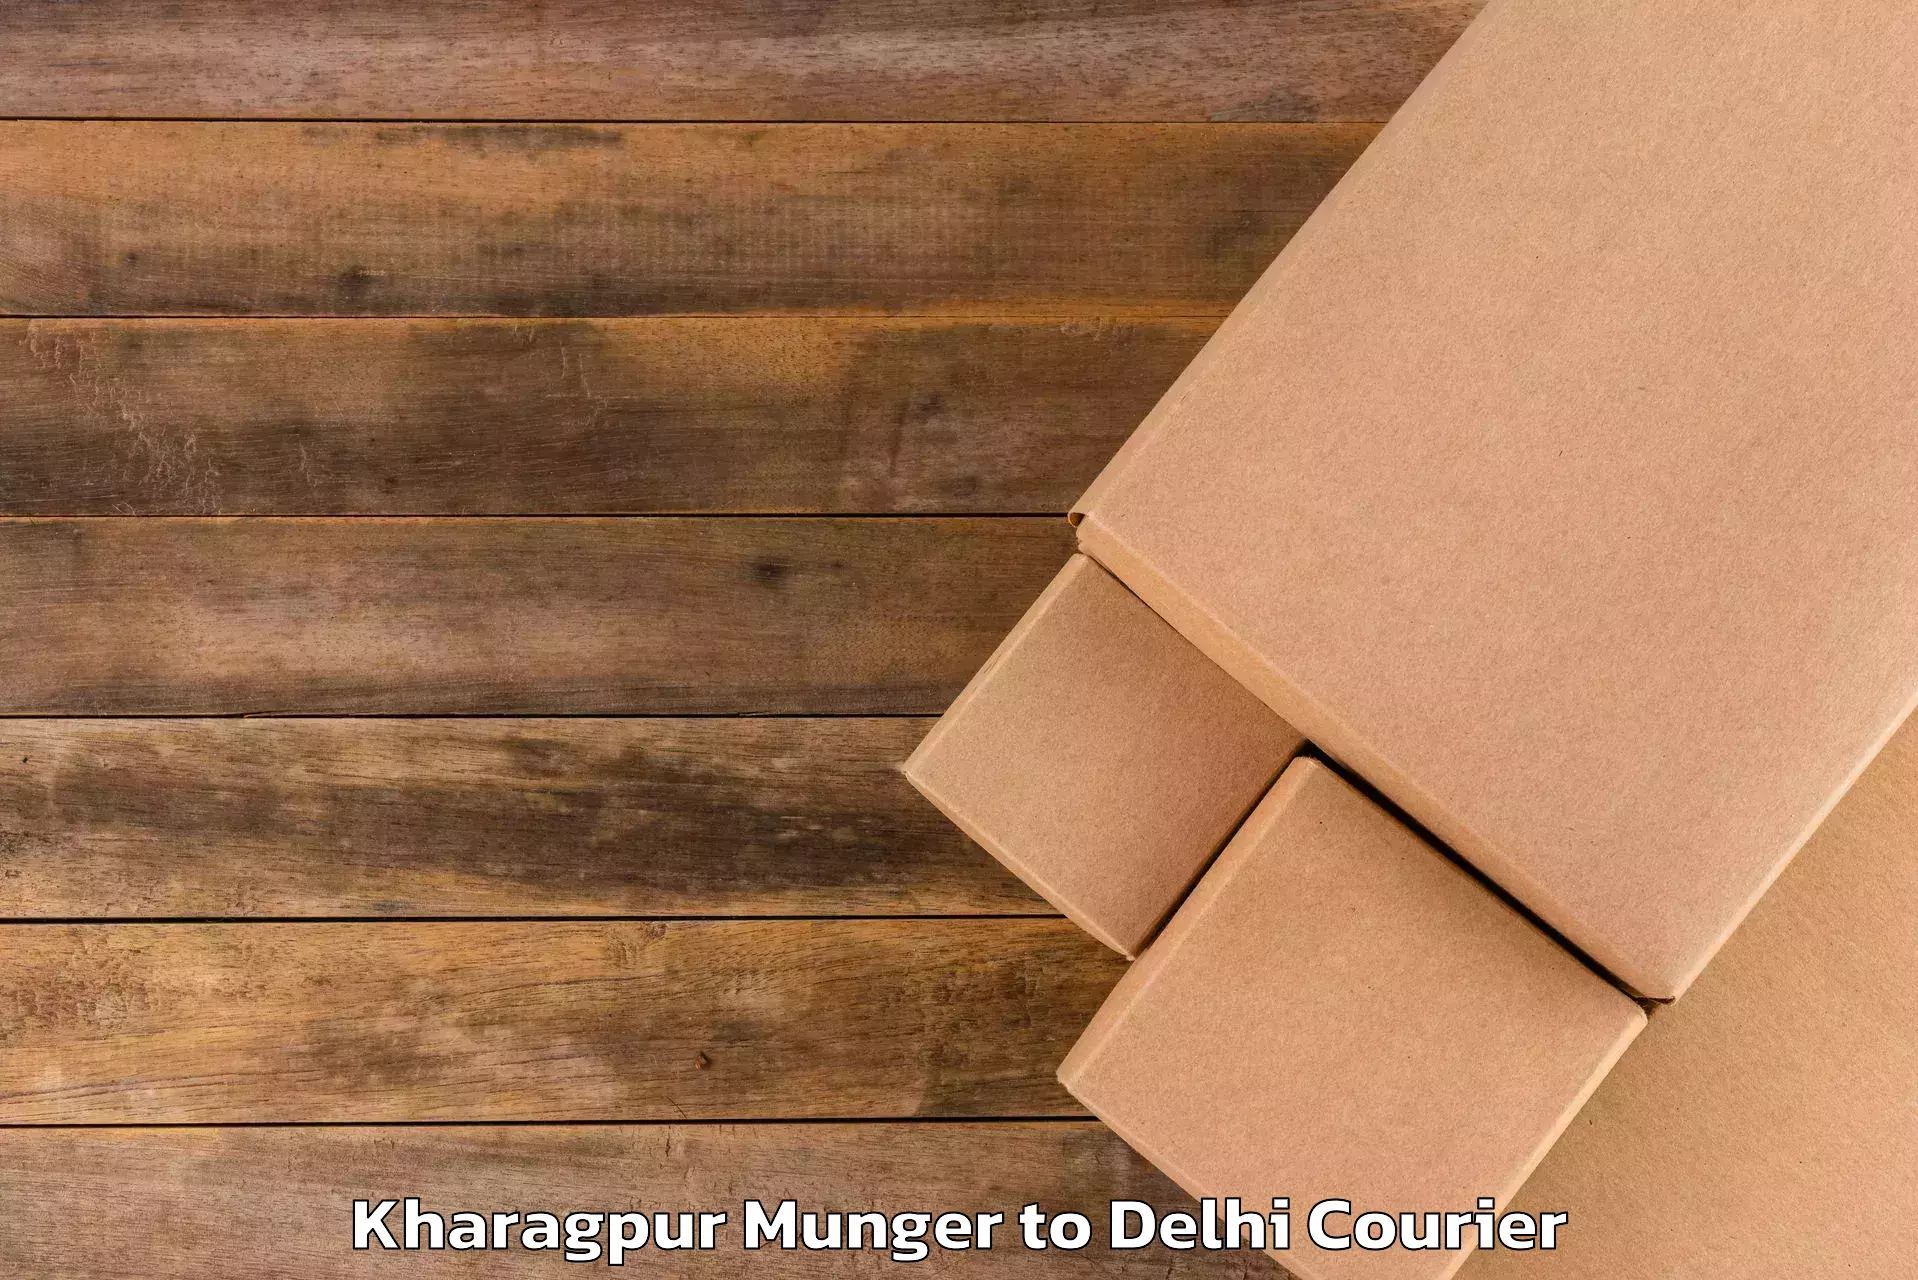 Luggage transport service Kharagpur Munger to Krishna Nagar